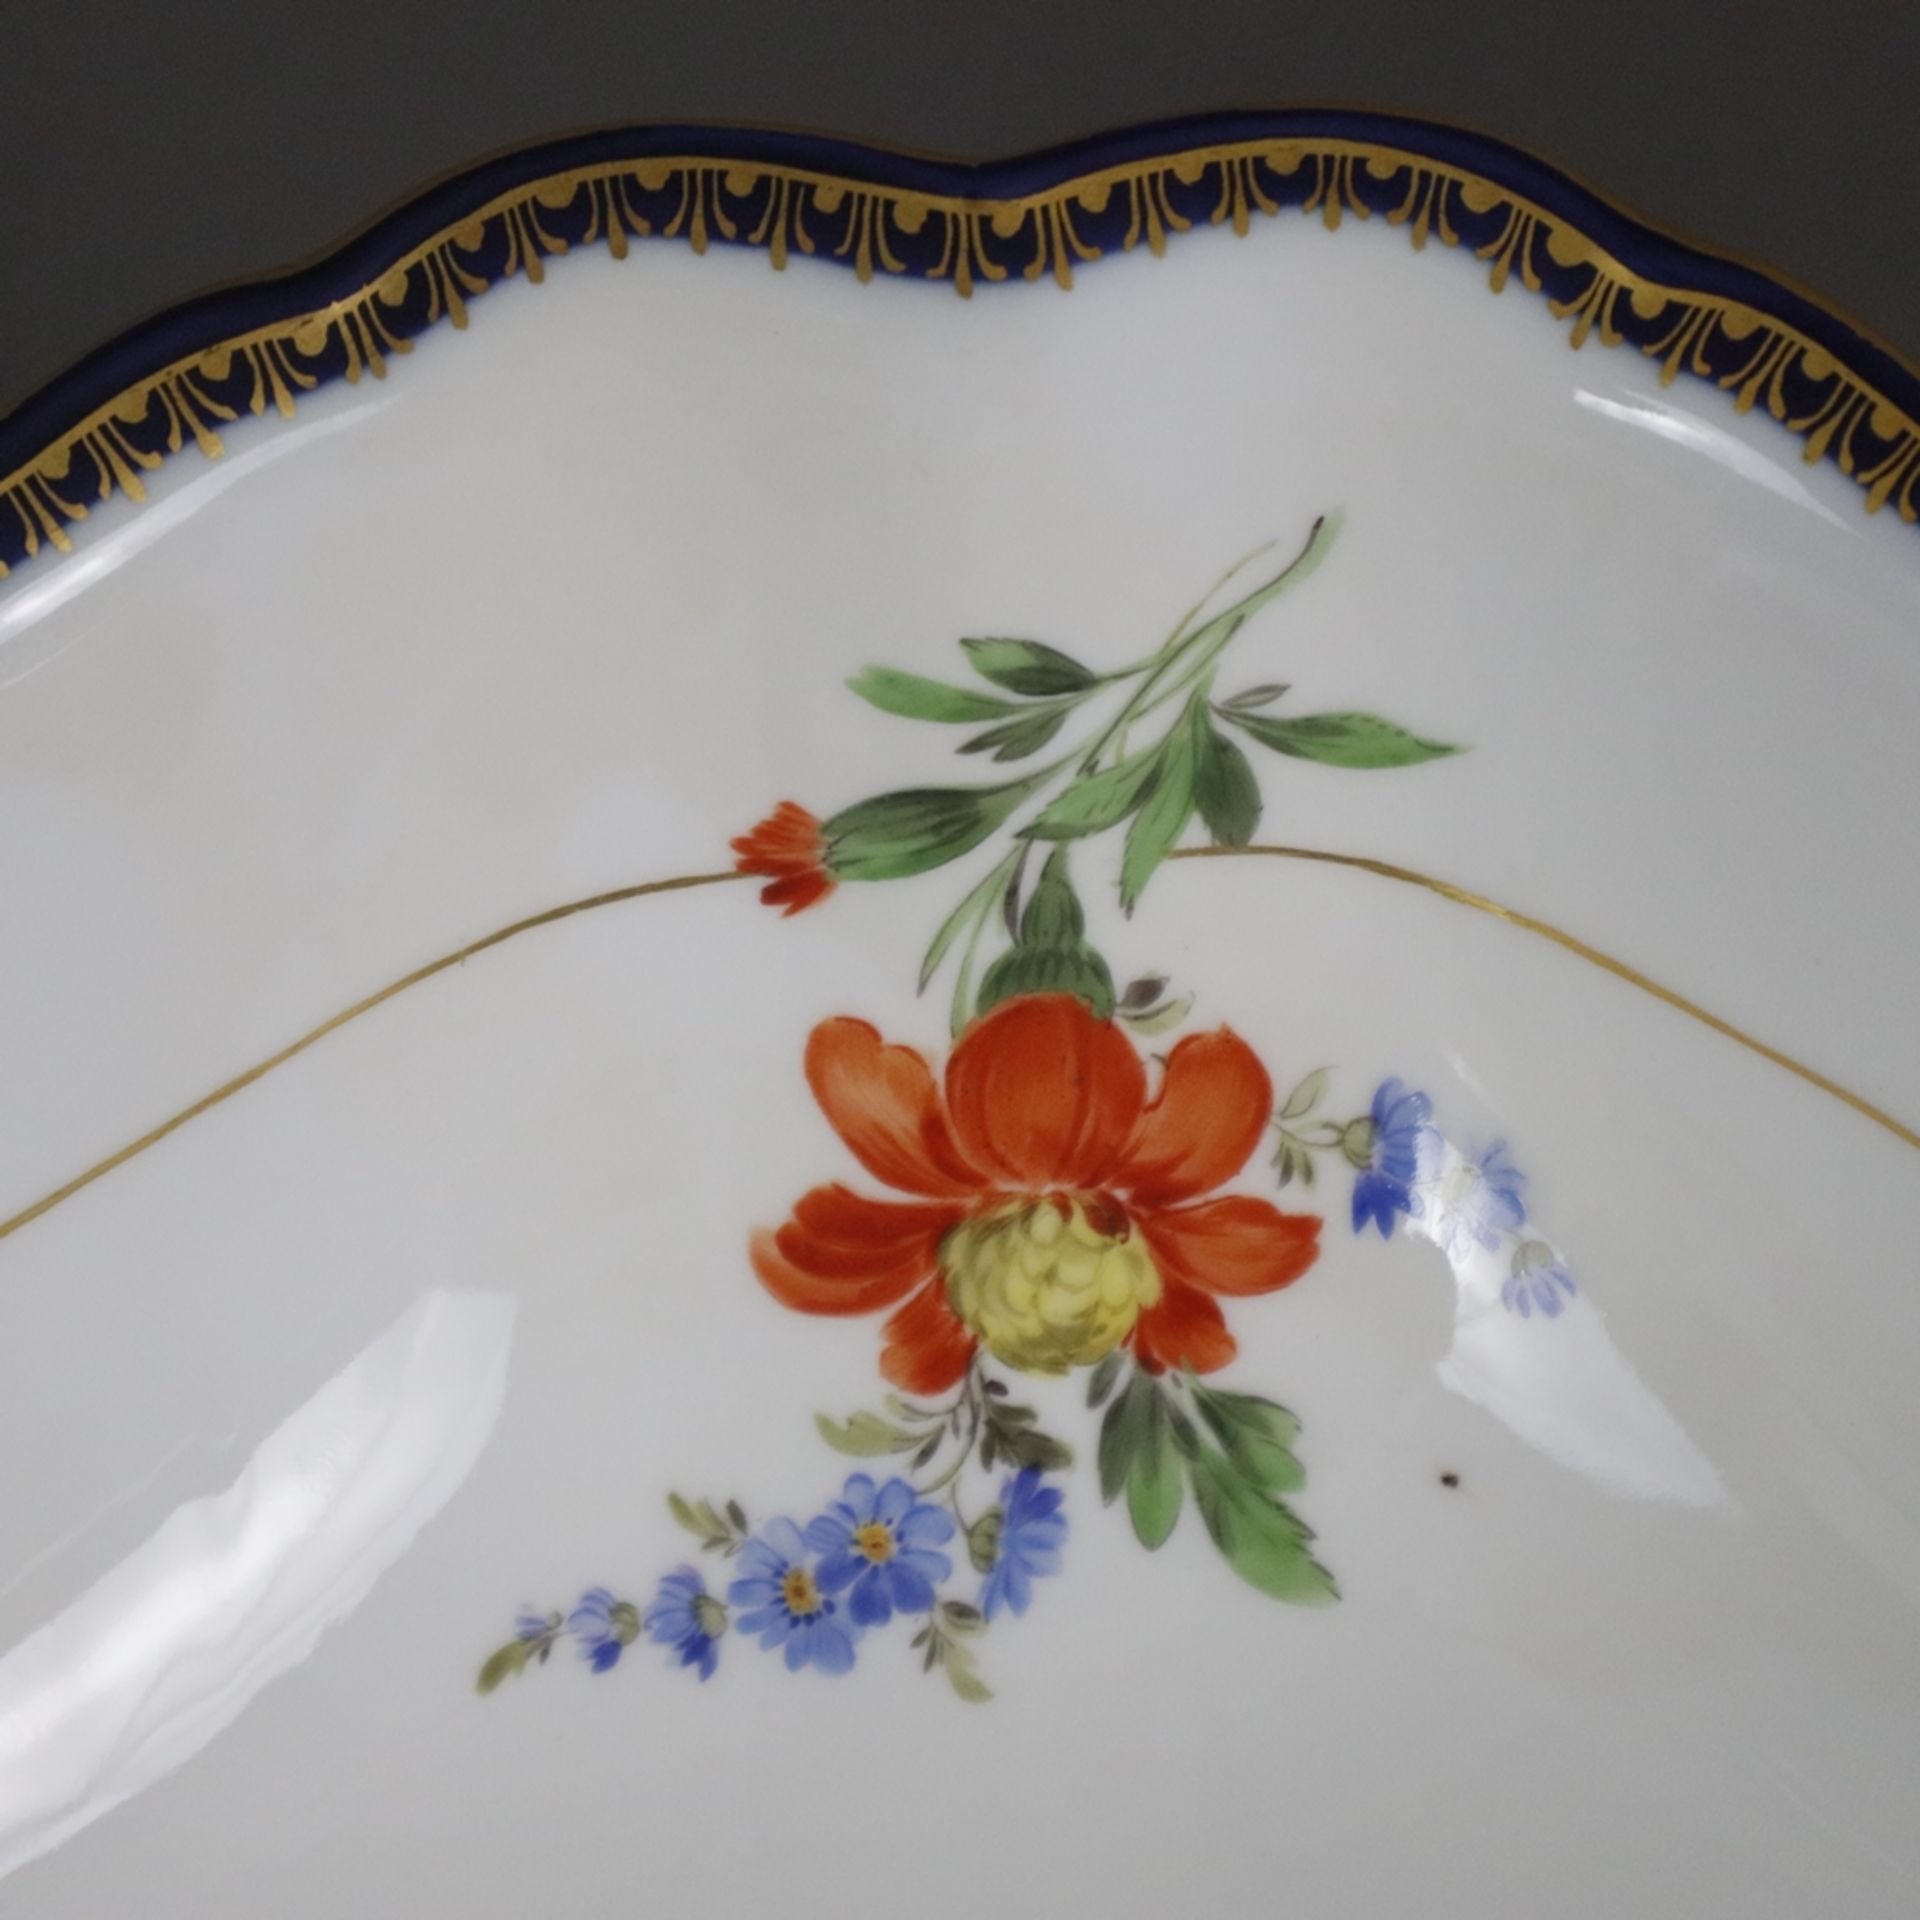 Salatschüssel - Meissen, Porzellan, Form "Neuer Ausschnitt", innen und außen polychrome Blumenmaler - Image 4 of 9